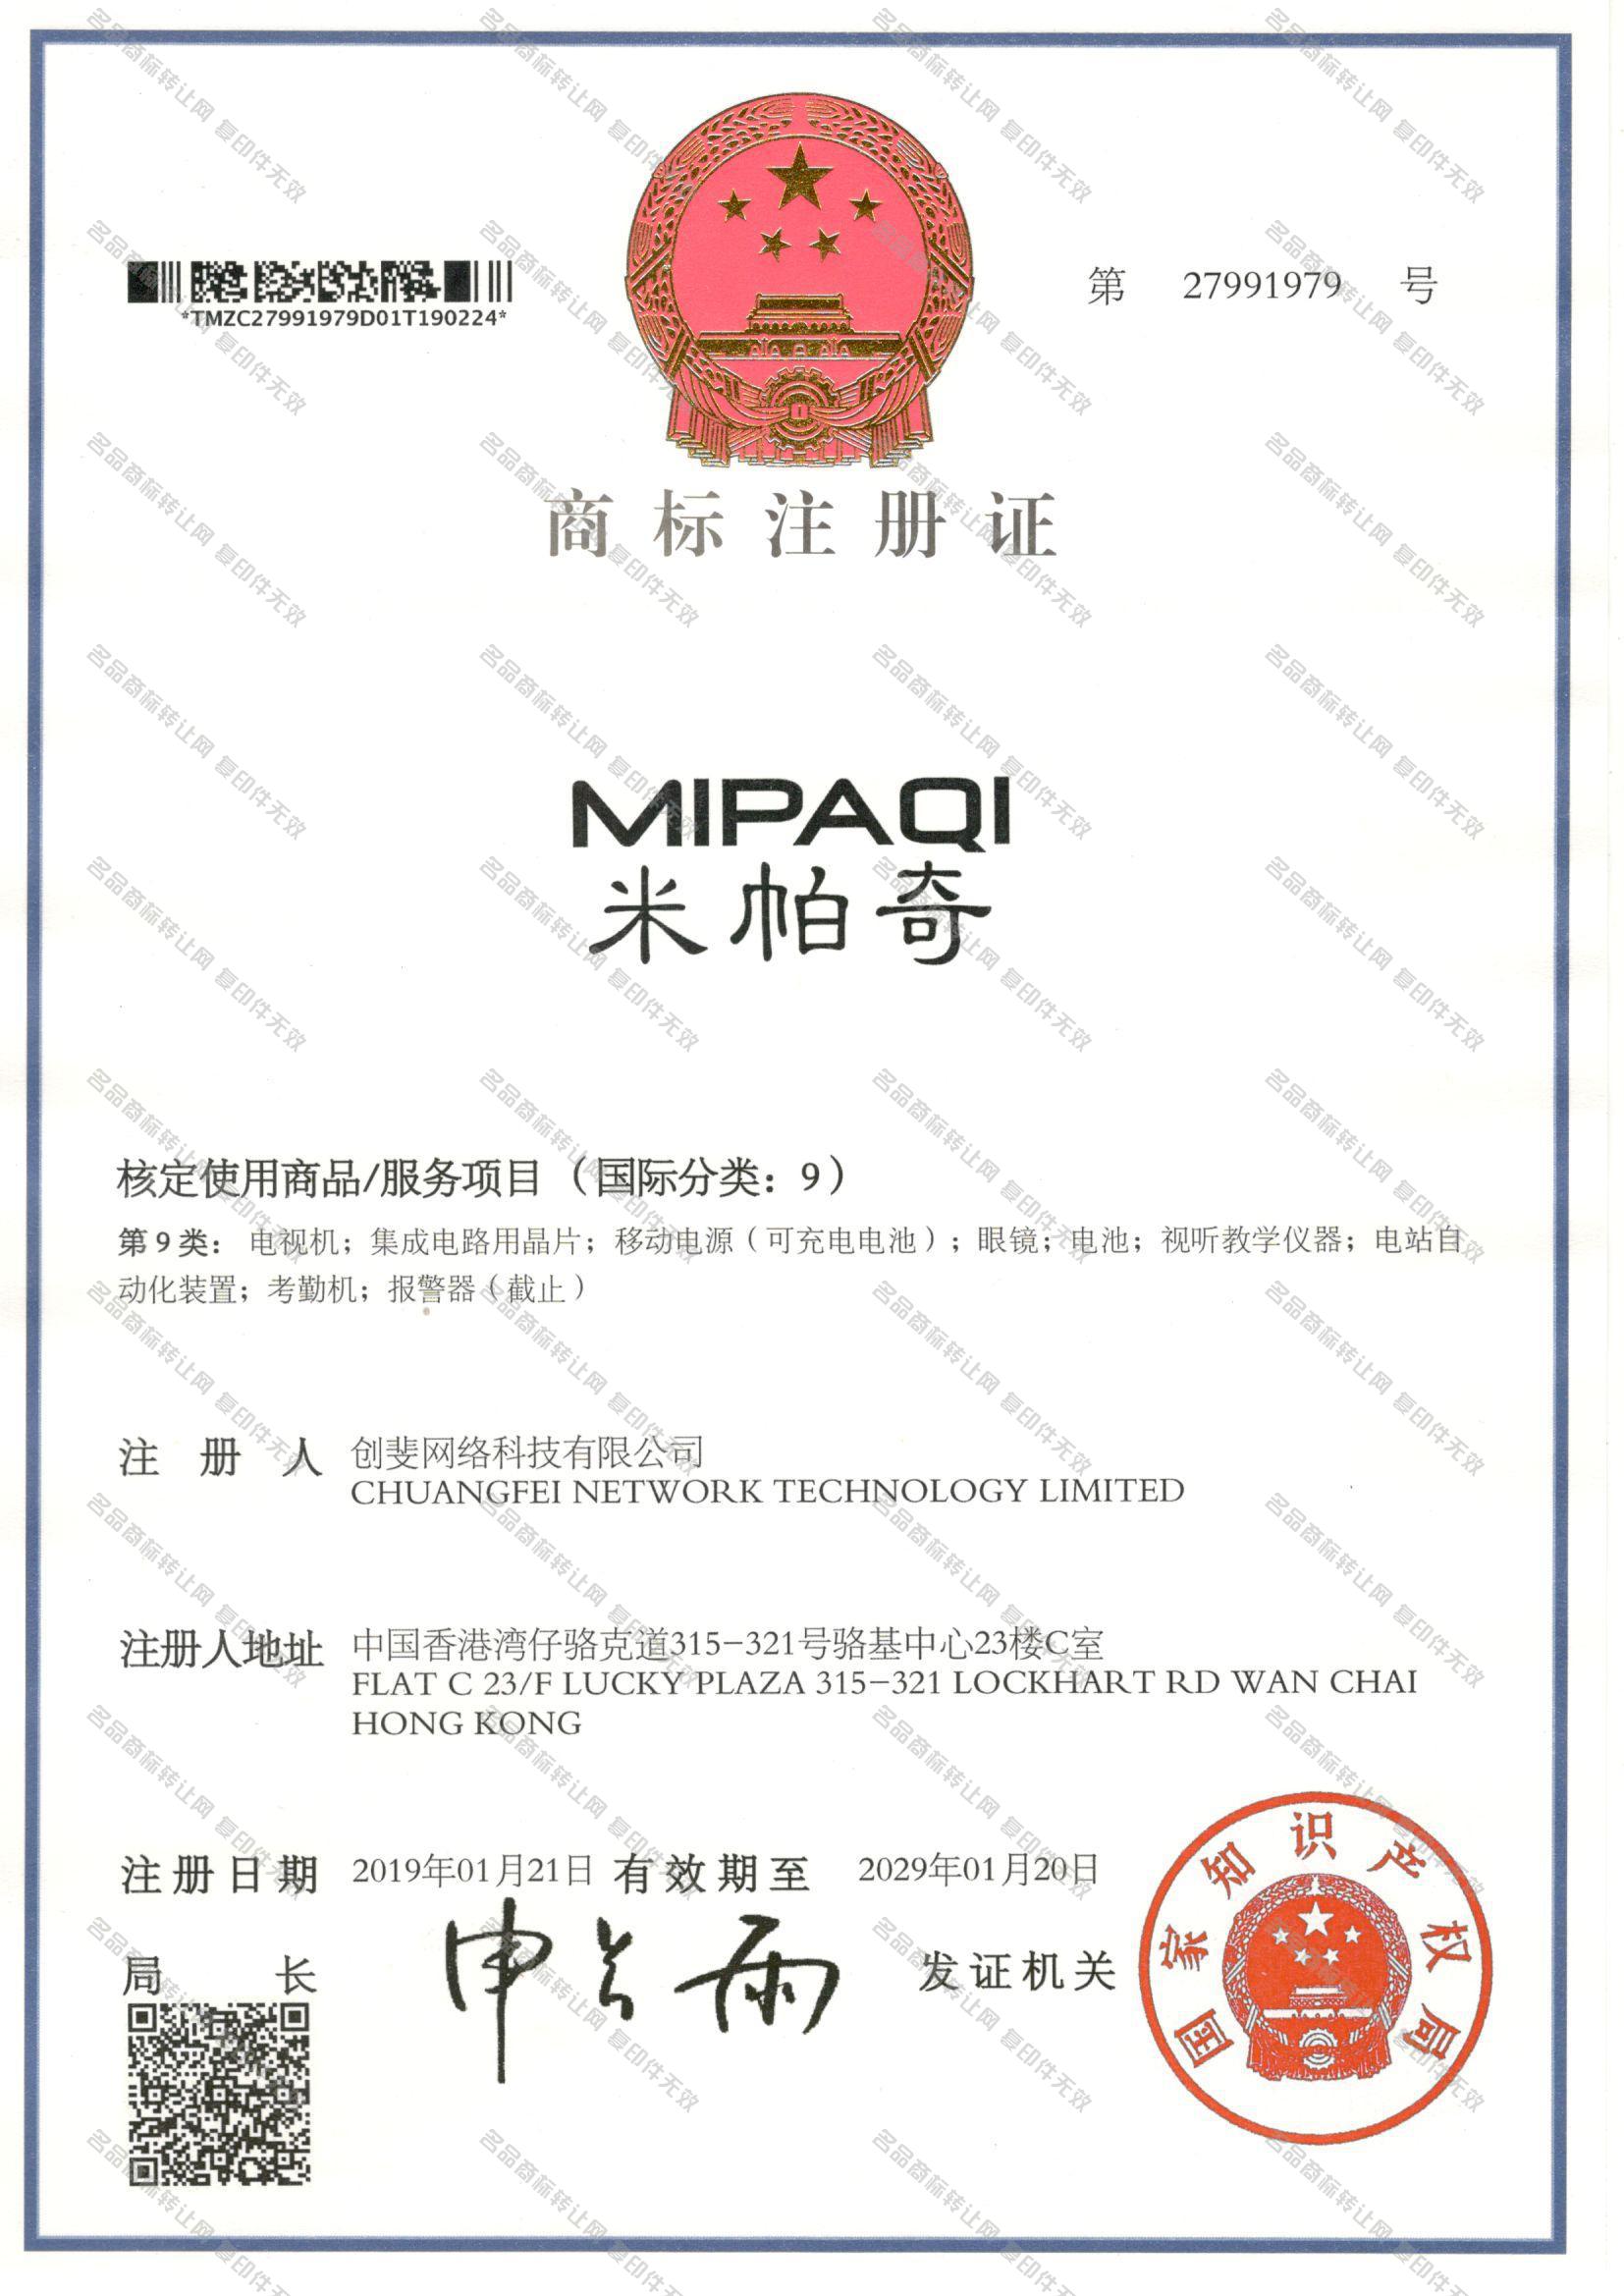 米帕奇 MIPAQI注册证